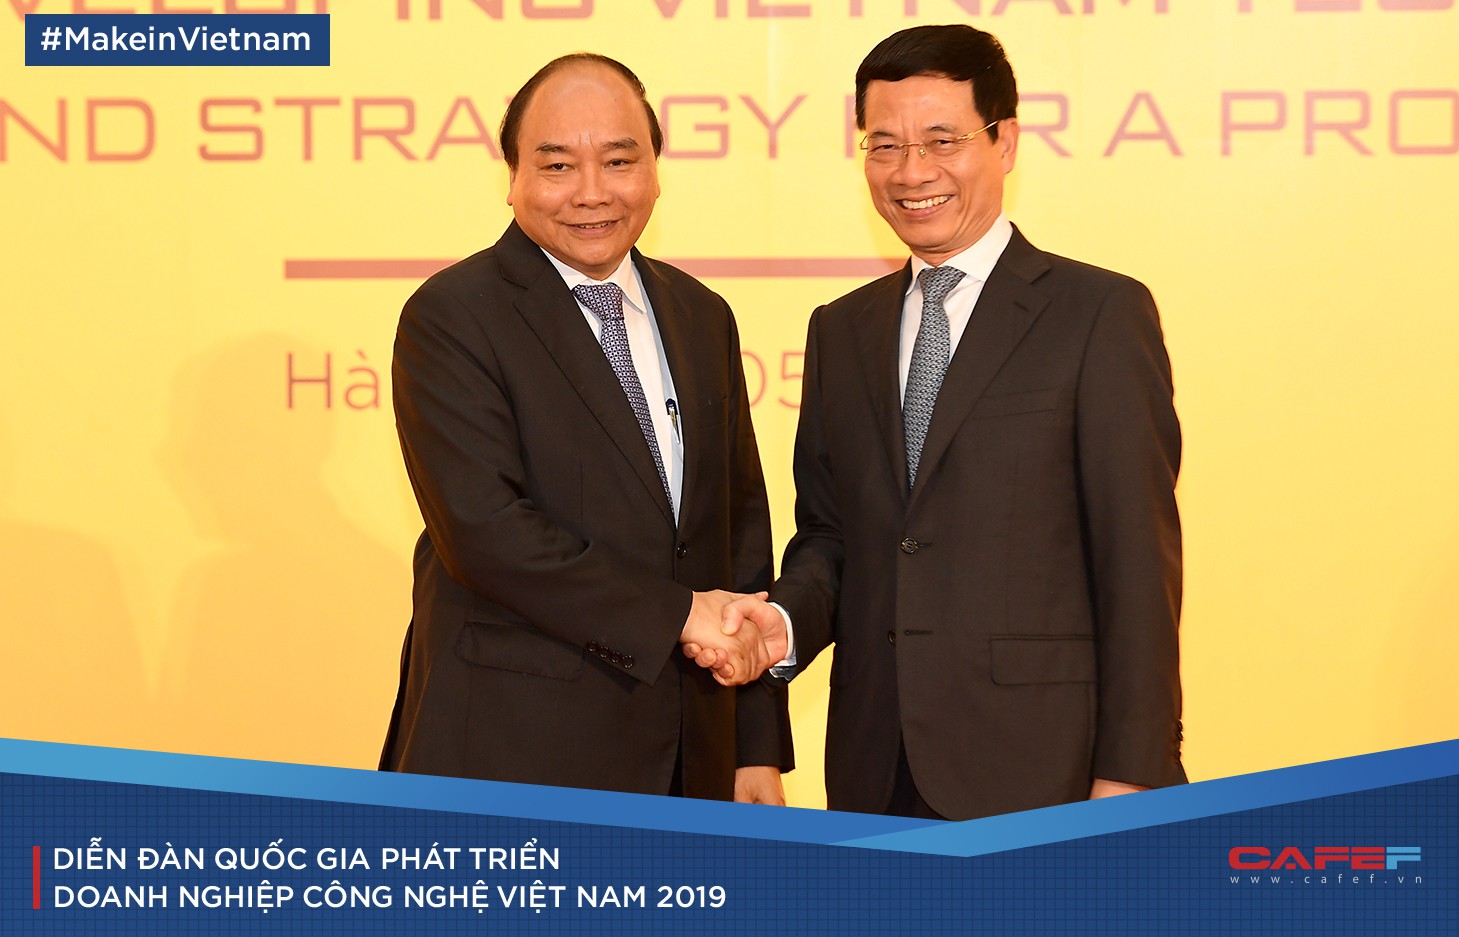 Góc nhìn lạ đằng sau “Make in Vietnam” của Bộ trưởng Nguyễn Mạnh Hùng - Ảnh 9.